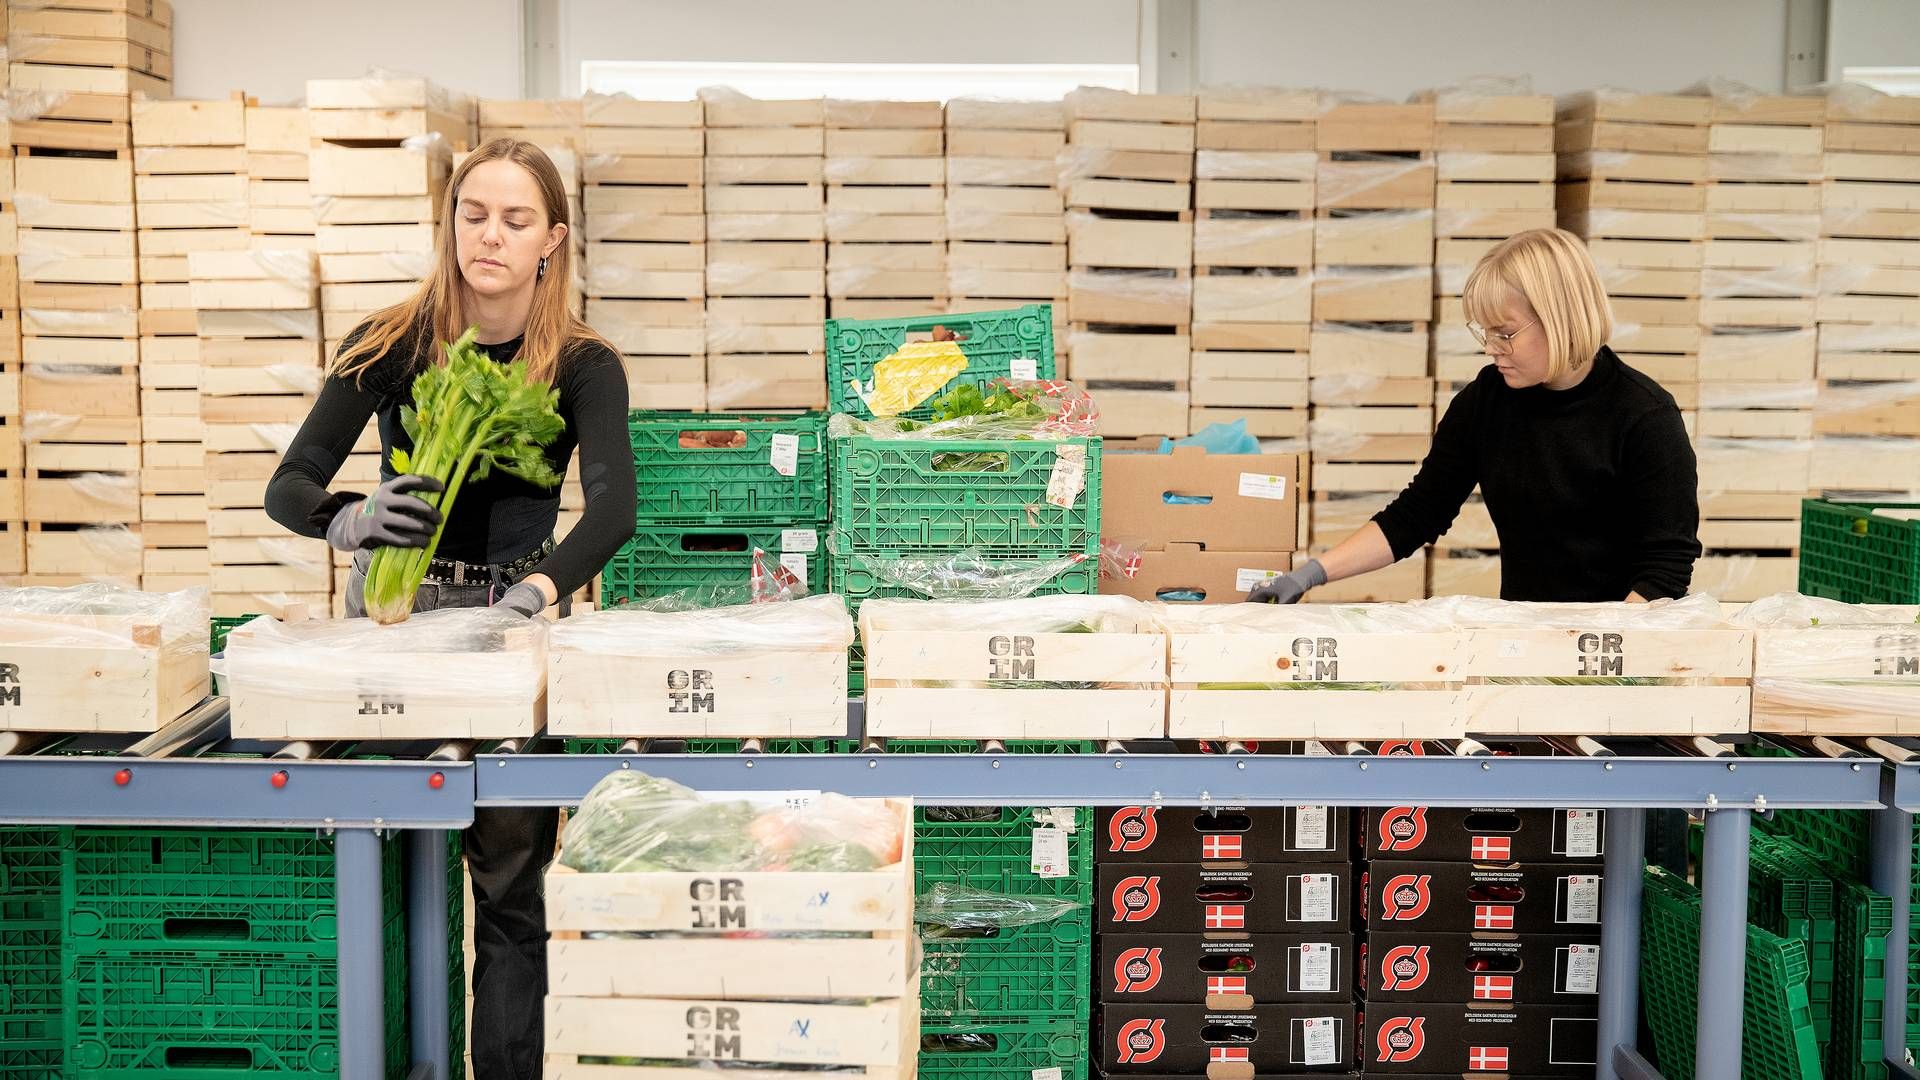 Virksomheden Eat Grim stopper forretningen inden for grøntsagskasser af grimme grøntsager. Efter konkurs i 2021 opstartede virksomheden igen i april 2022. Nu vil den fokusere kræfterne andetsteds. | Foto: Peter Hove Olesen